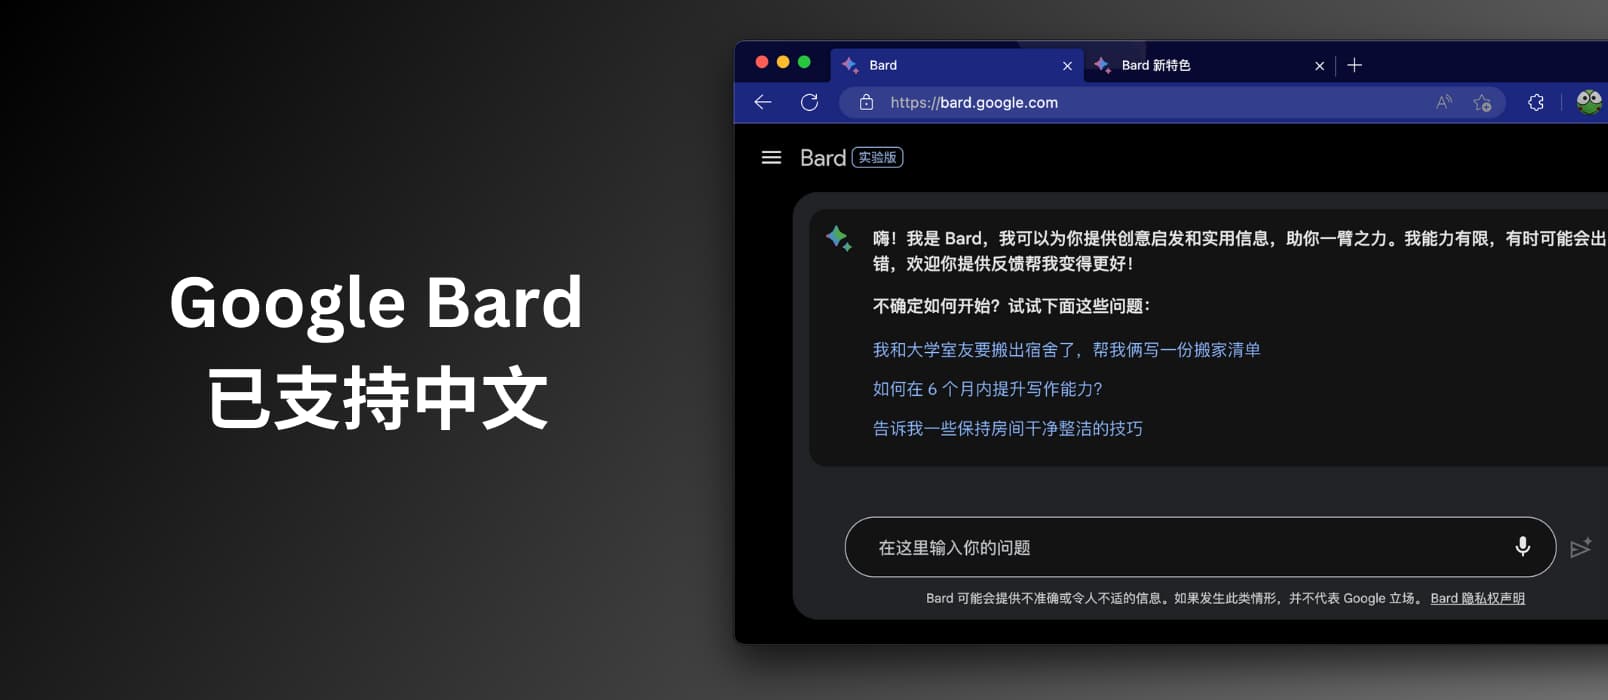 聊天式大型语言模型 Google Bard 已支持中文 1